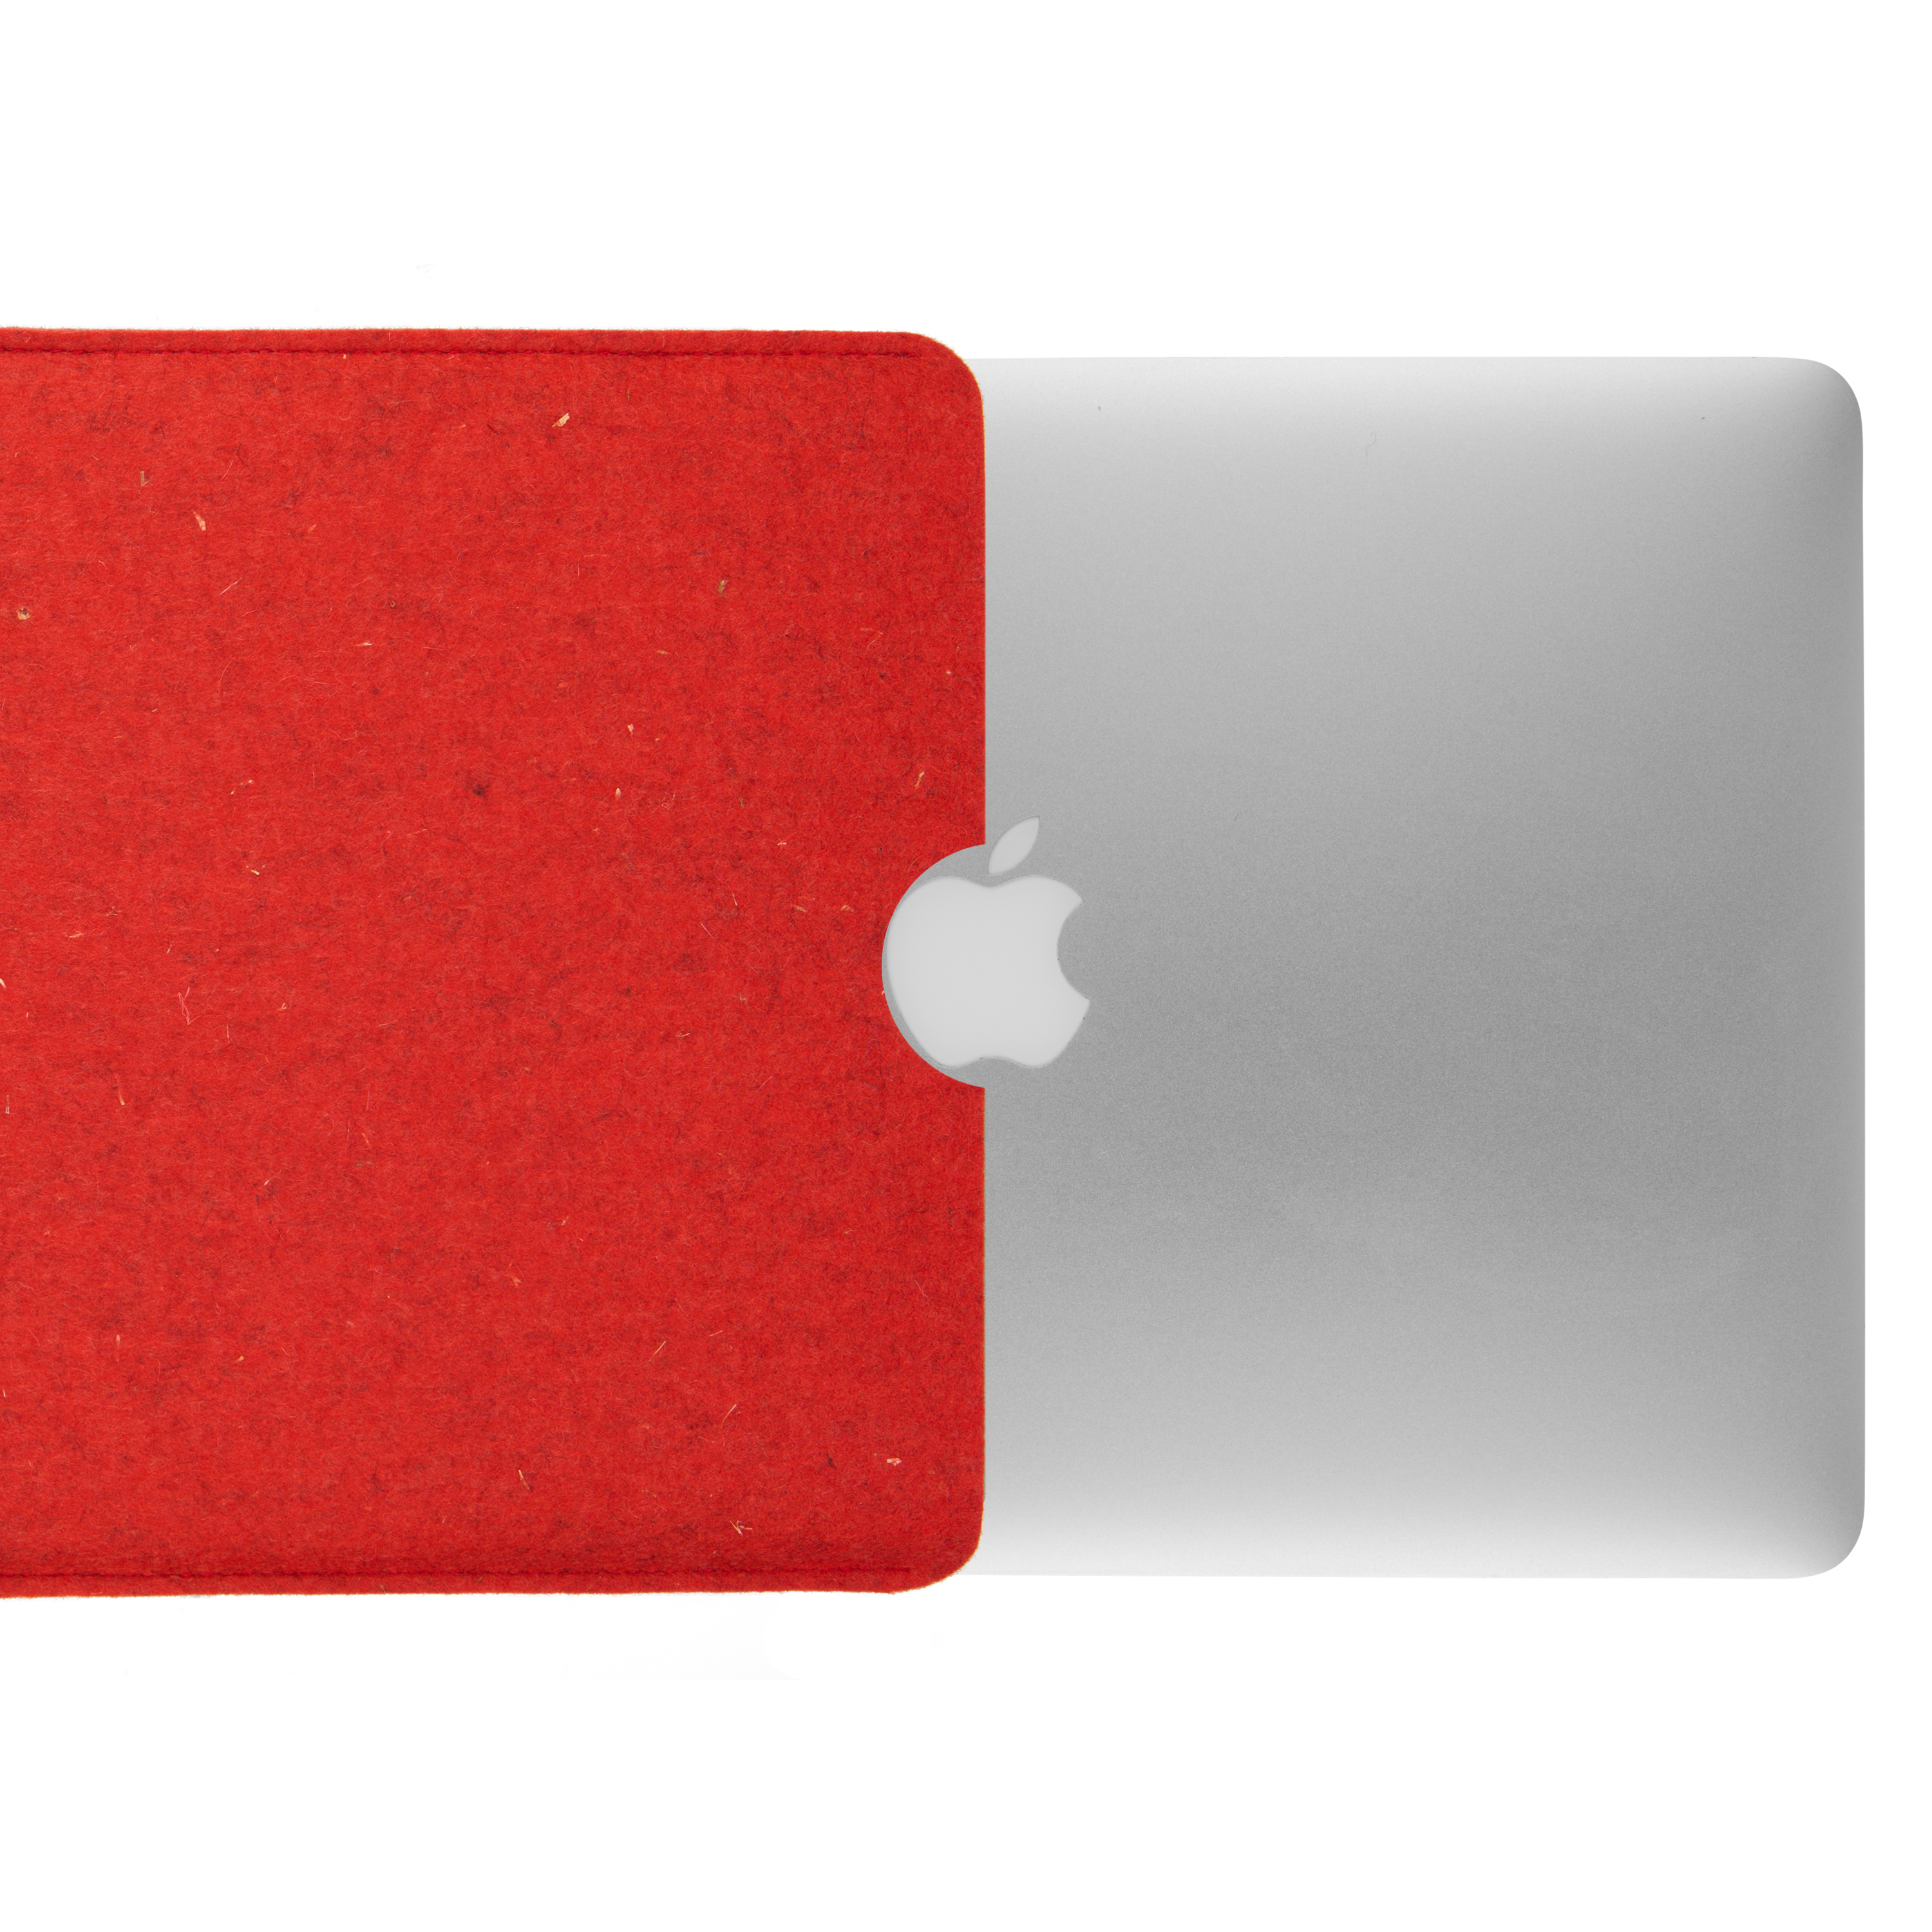 Sleeve (100% COVERKINGZ für Filz Laptop Tasche Notebook Apple rot Schurwolle),